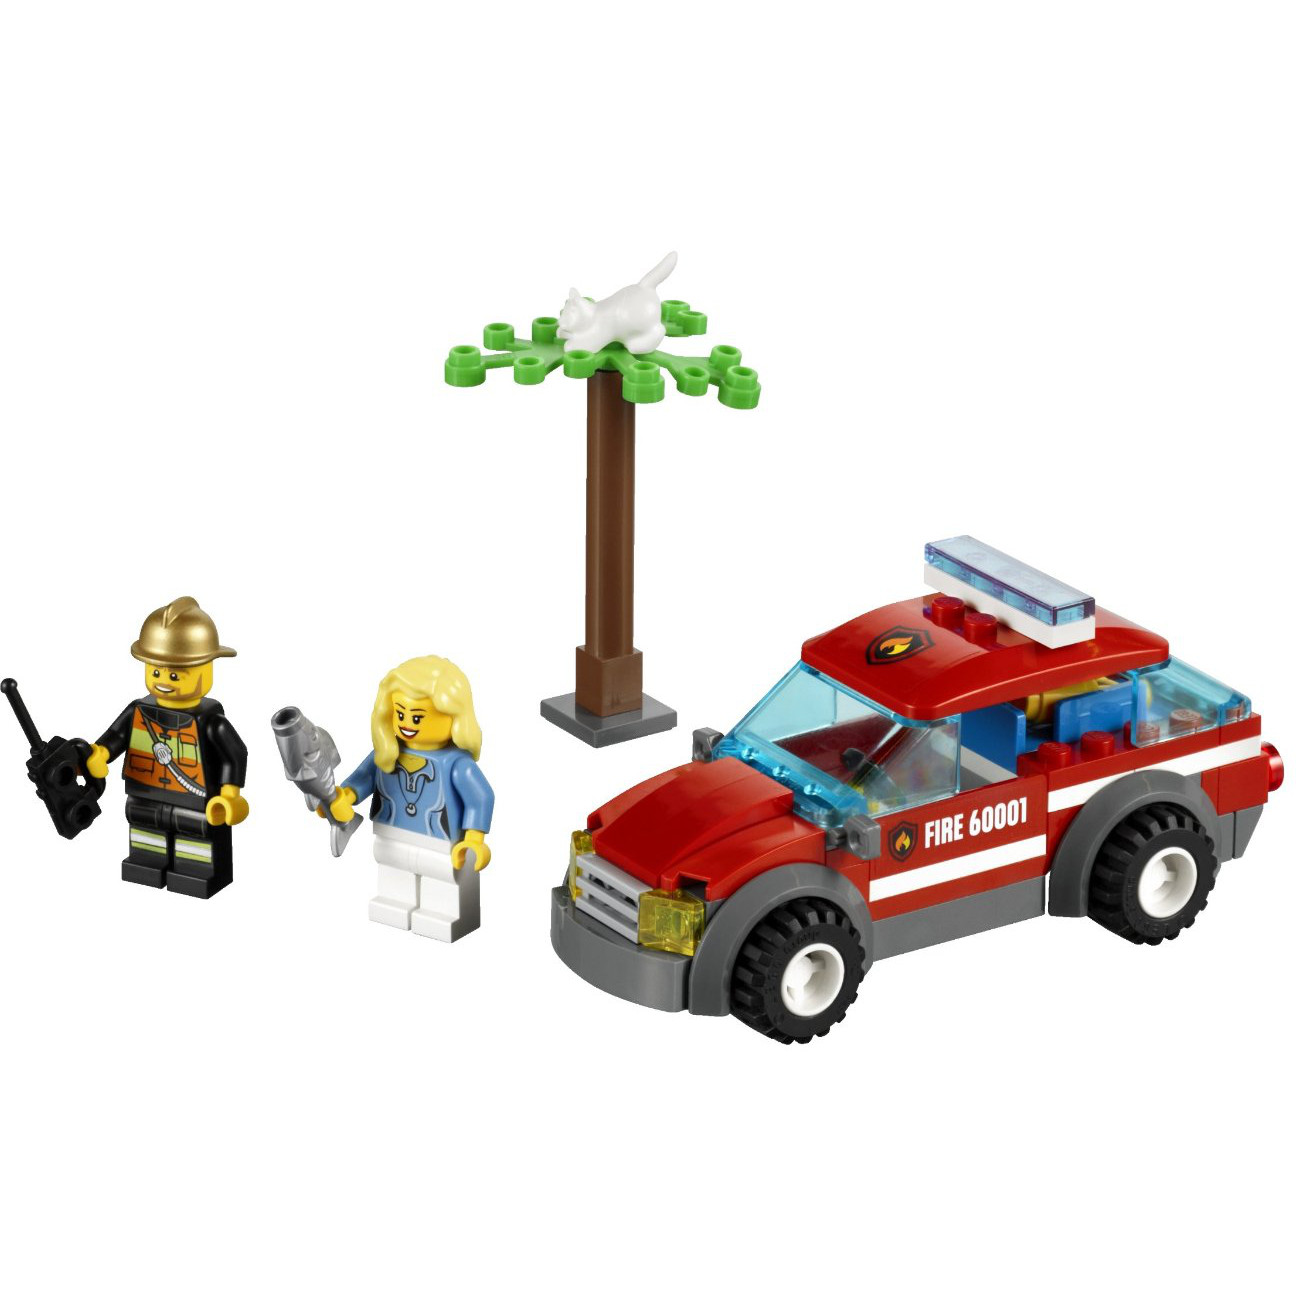  Set de constructie LEGO City - Fire Chief Car 60001 